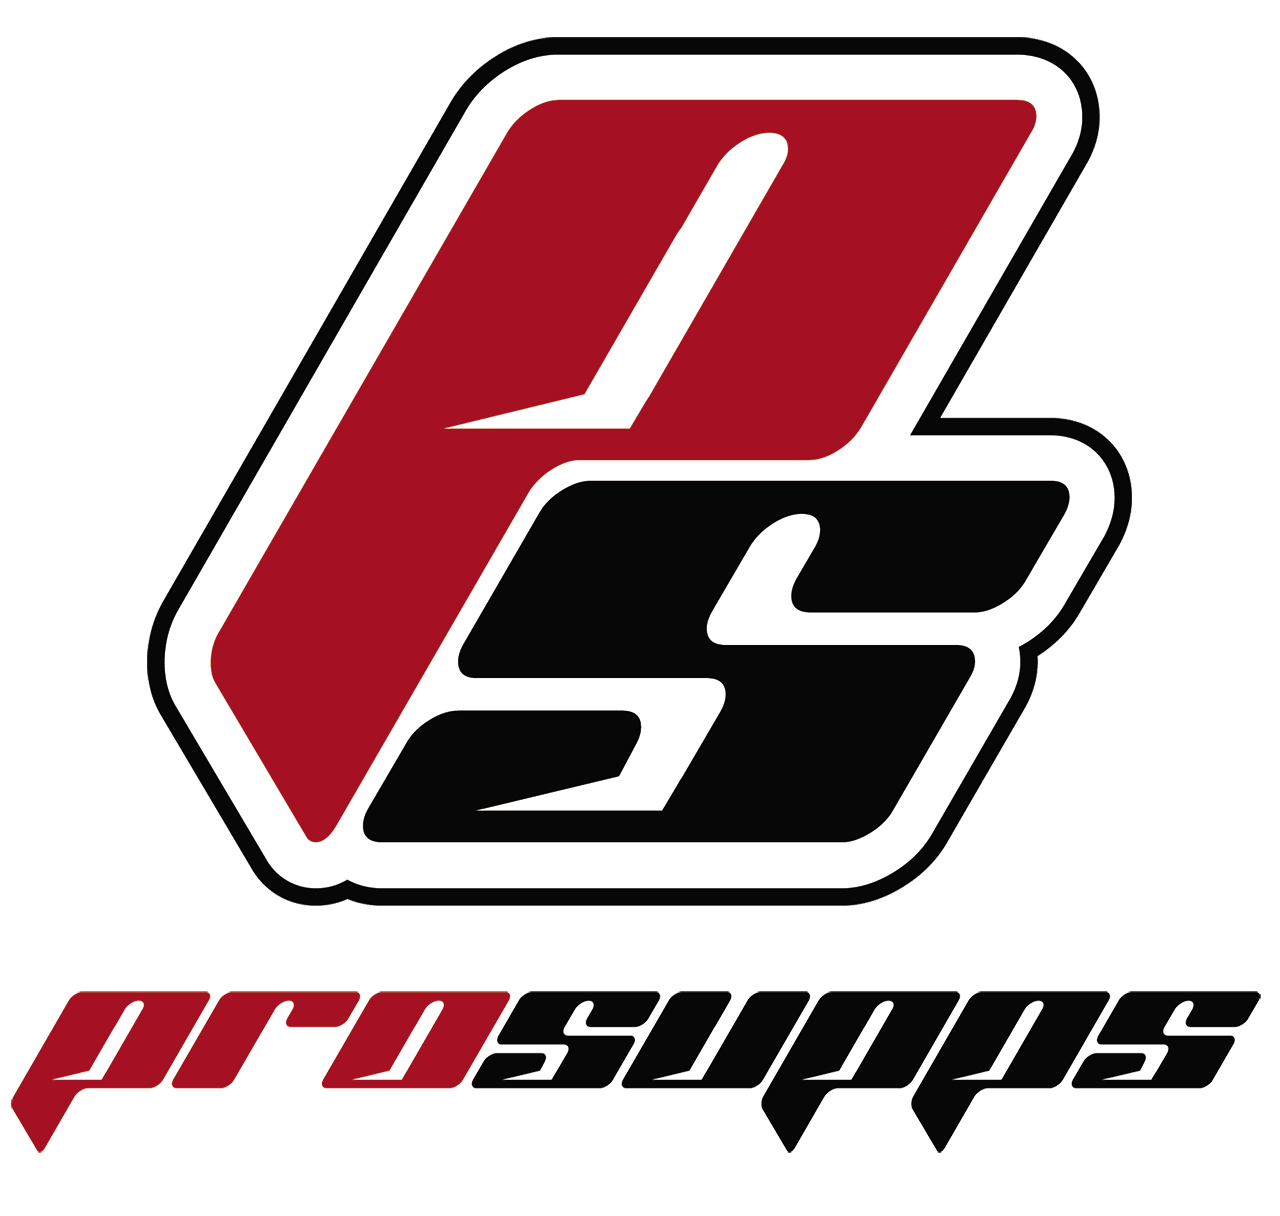 prosupps logo